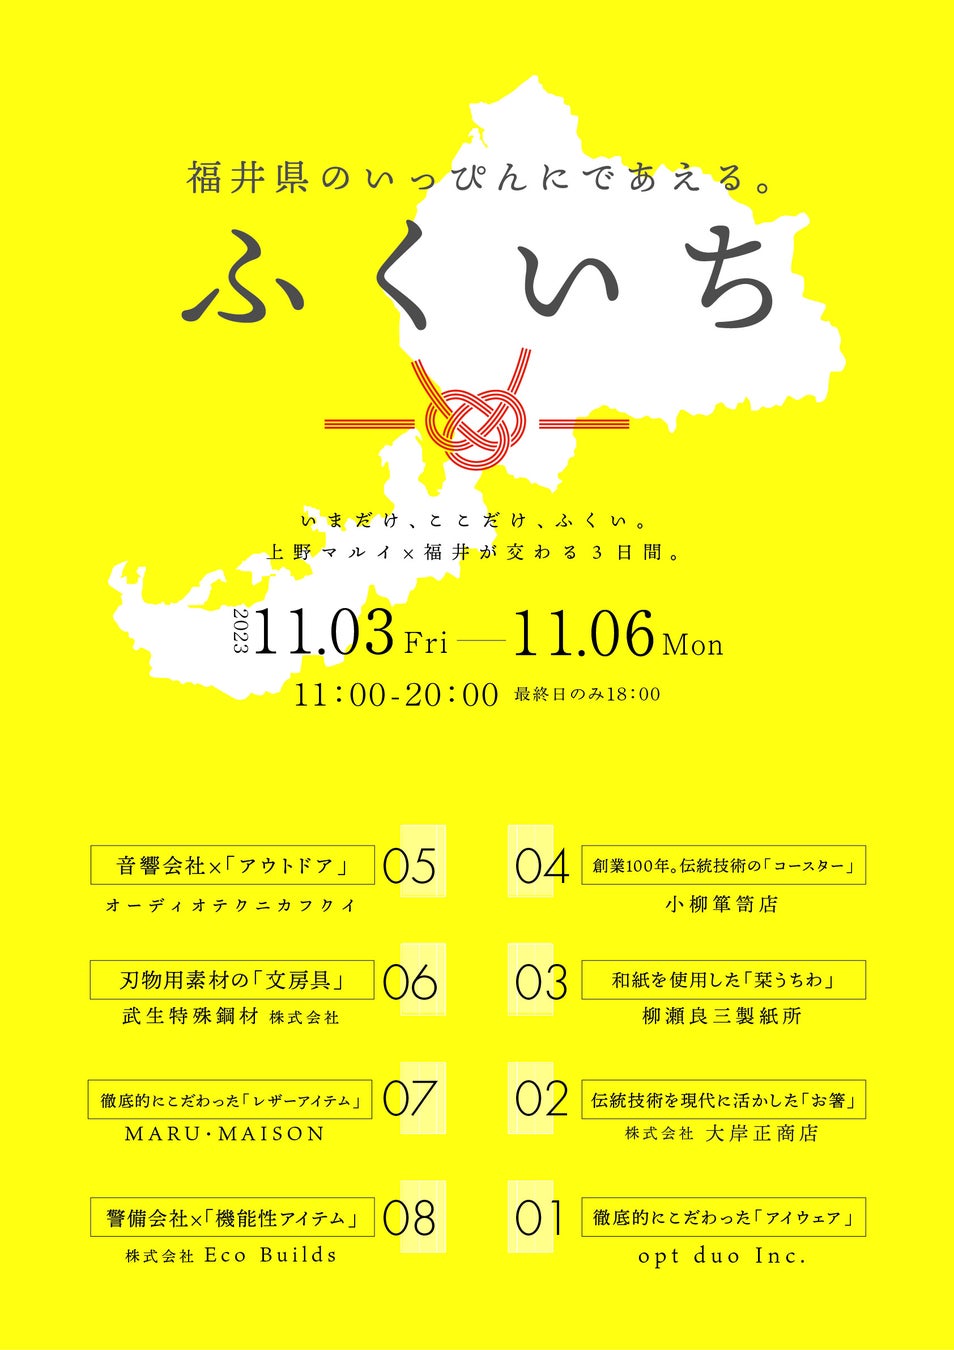 【初出店】福井県と言えば？？　福井の企業8社が「逸品」を展示。上野マルイにて「テストマーケティング」開催／期間限定の展示・販売イベント「ふくいち」を開催